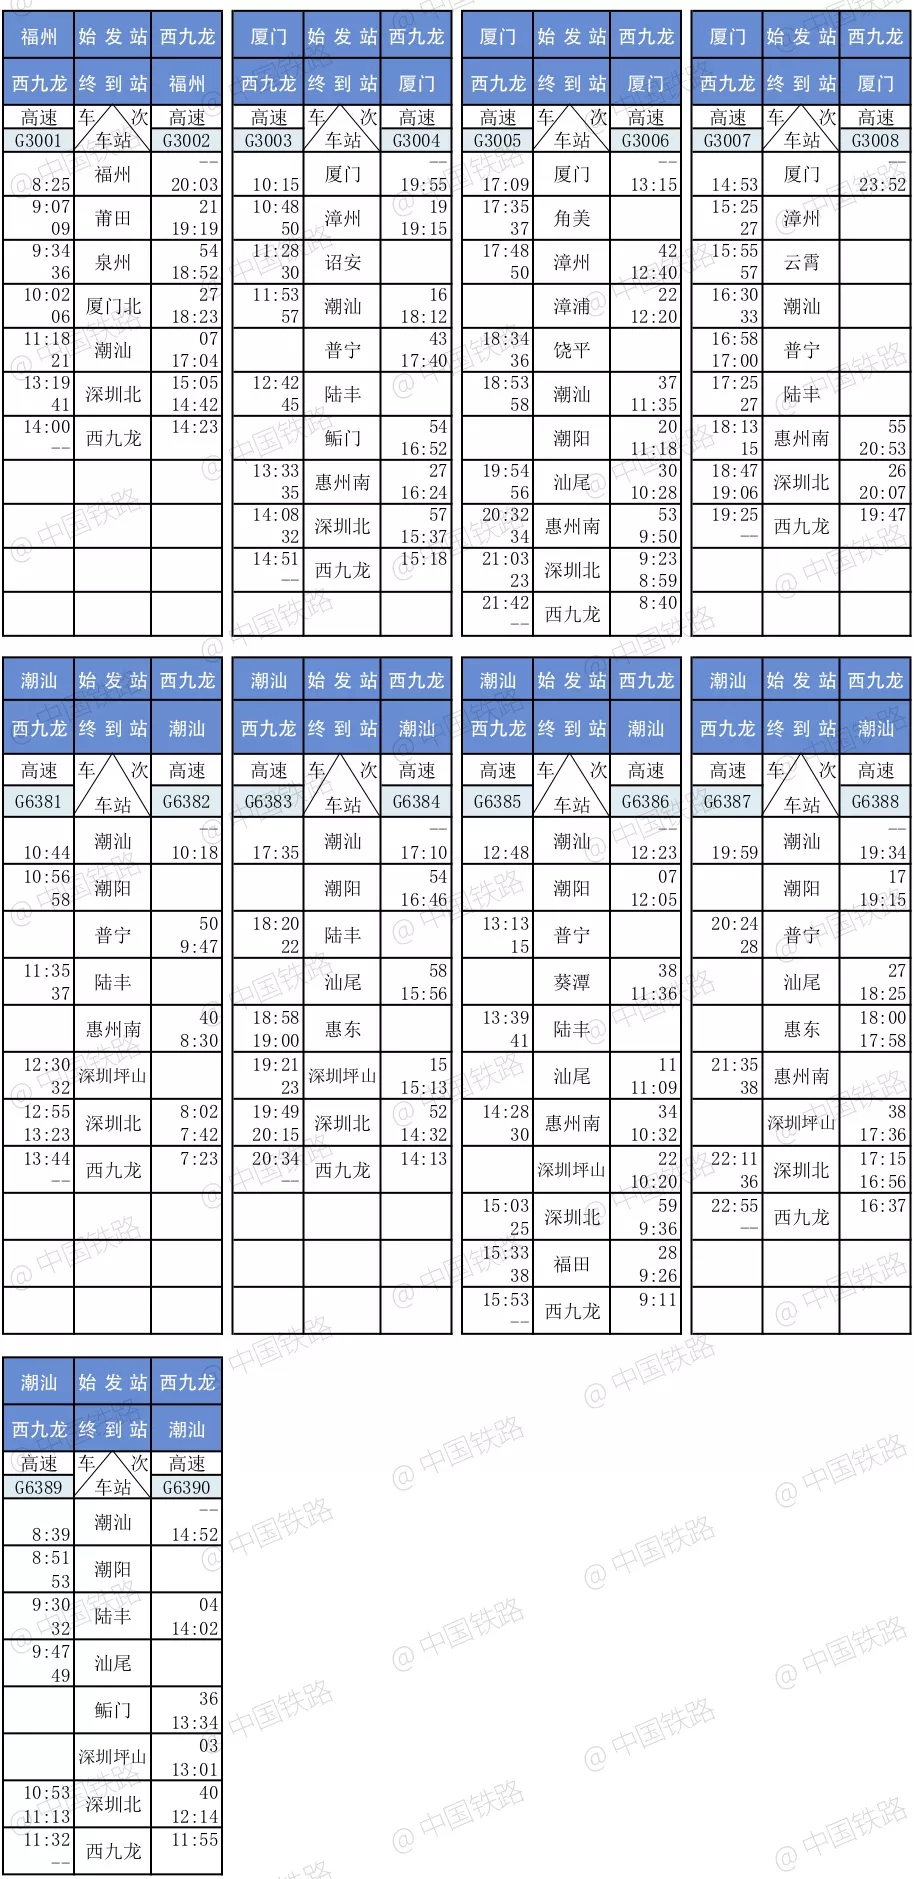 广深港高铁车票10日开始发售 香港段23日正式运营